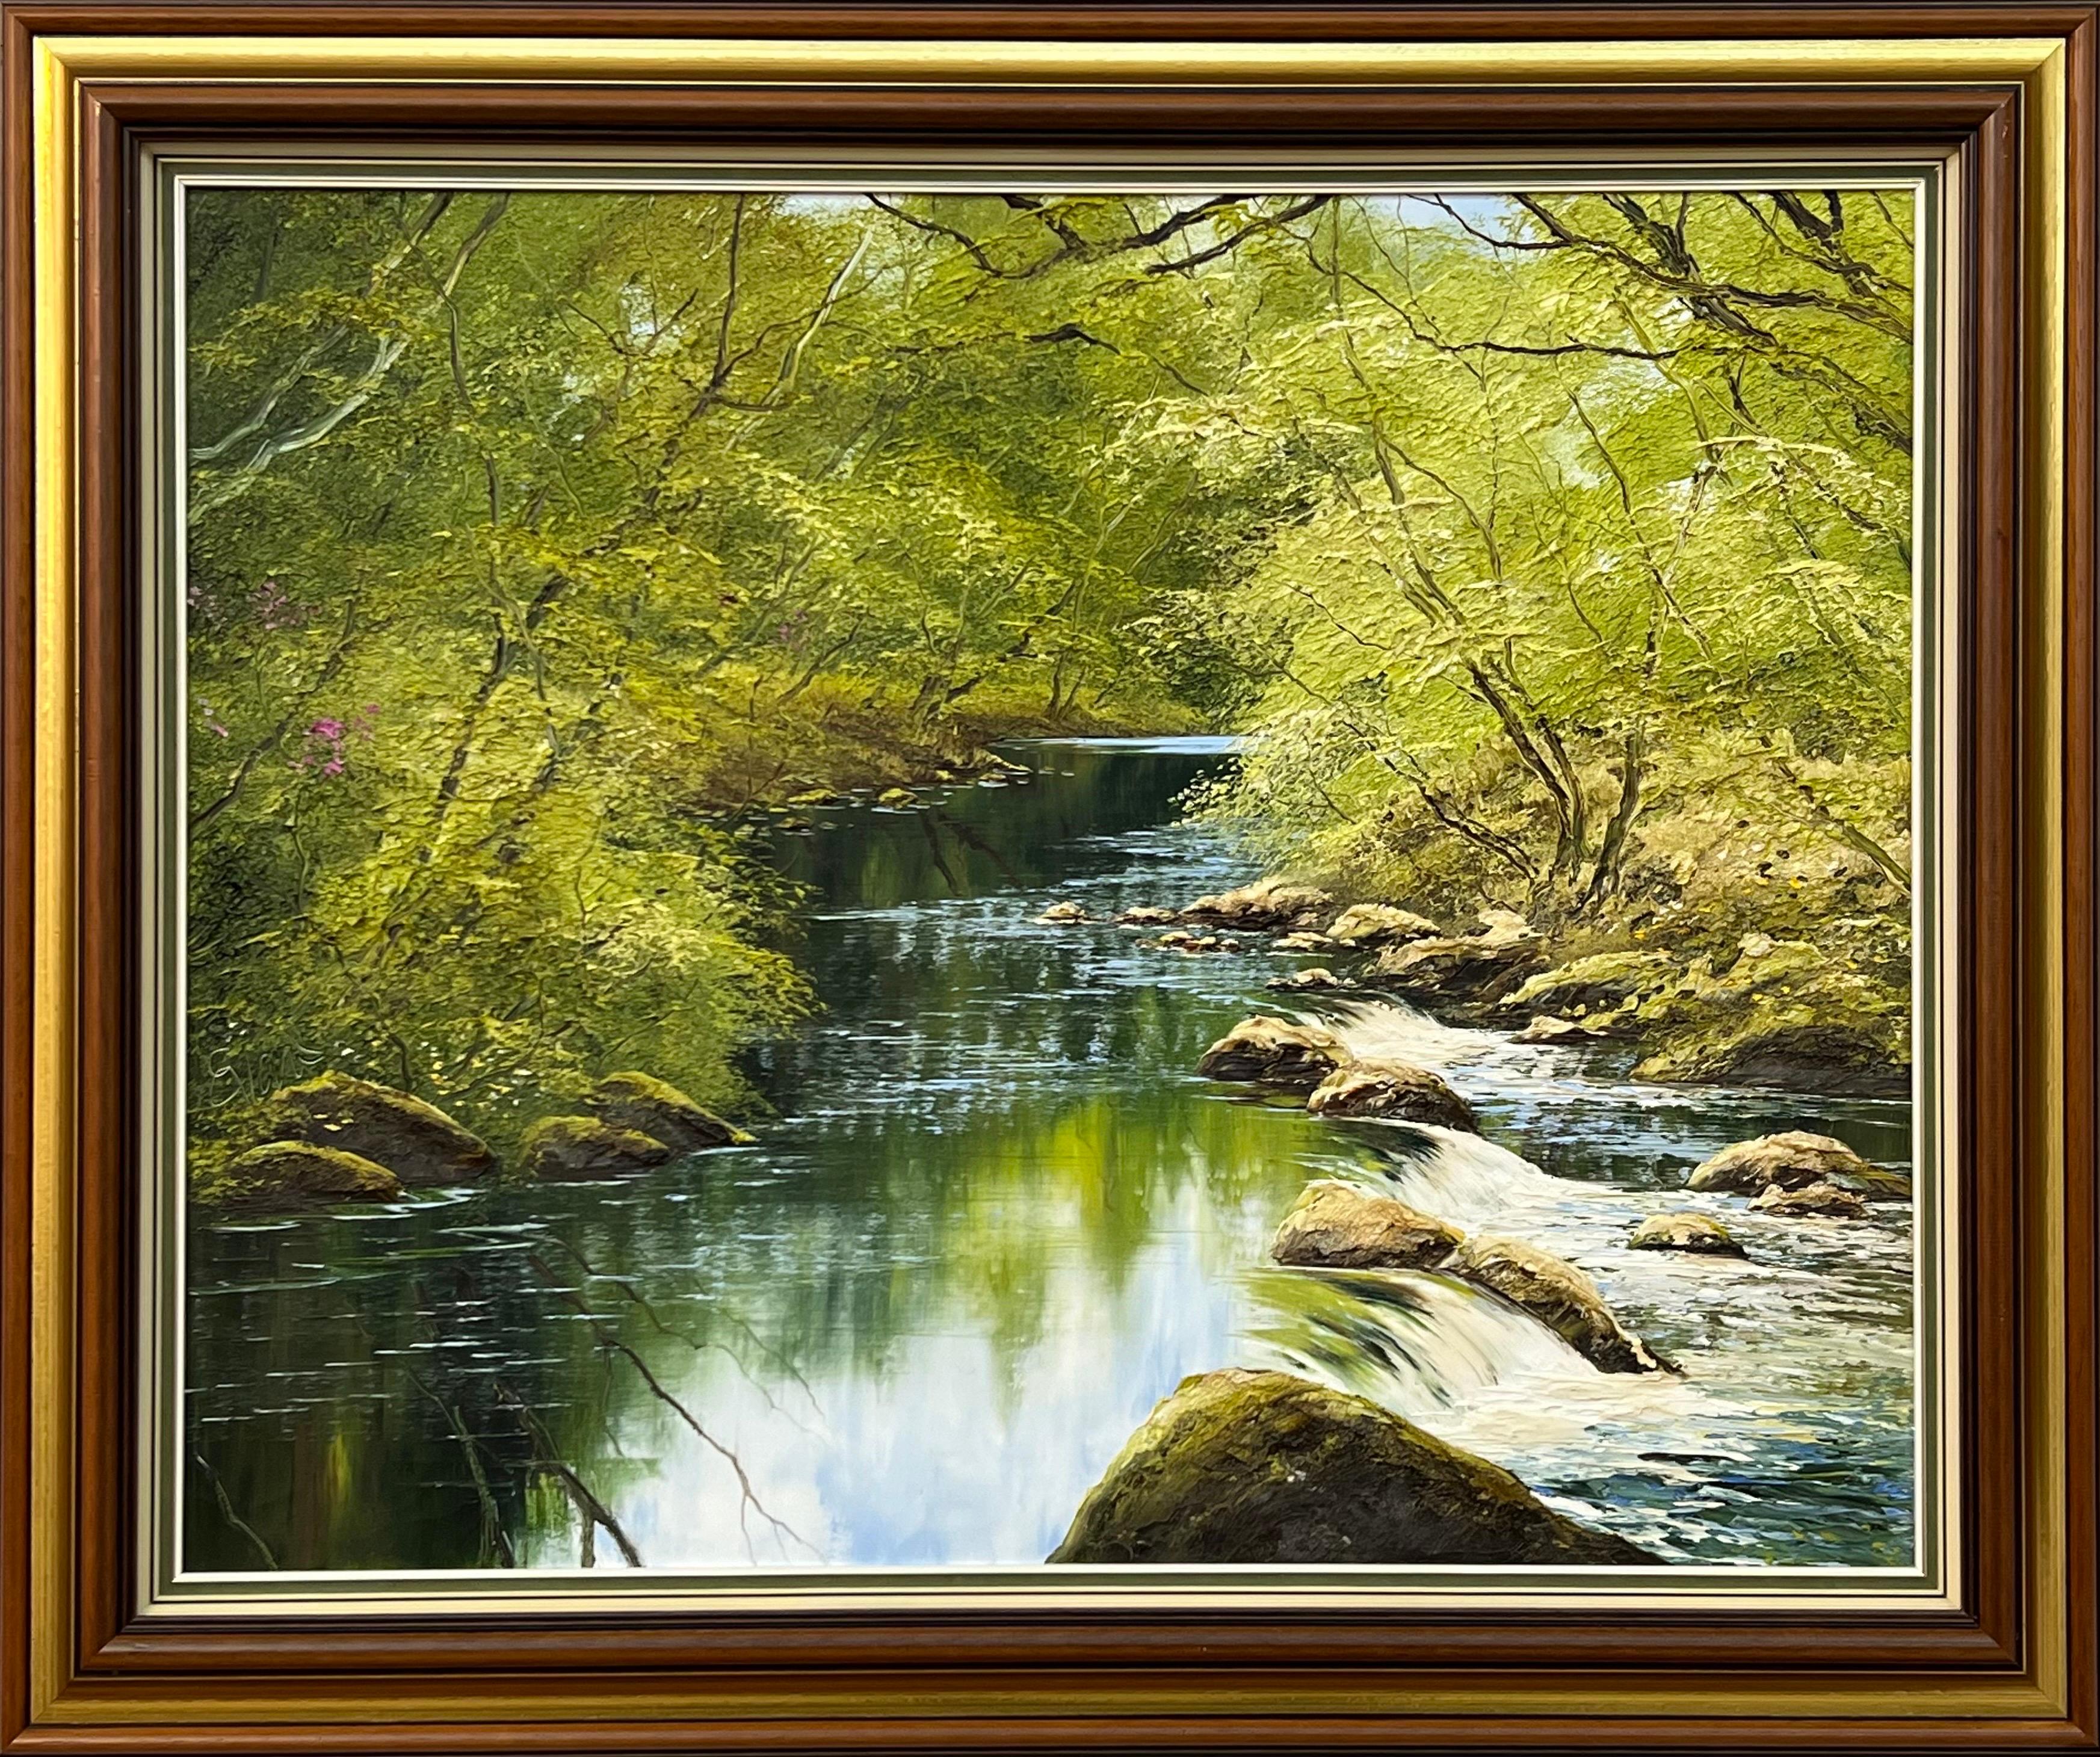 Abstract Painting Terry Evans - Peinture à l'huile empâtée d'une scène d'arbre de rivière Artiste britannique d'après-guerre et contemporain